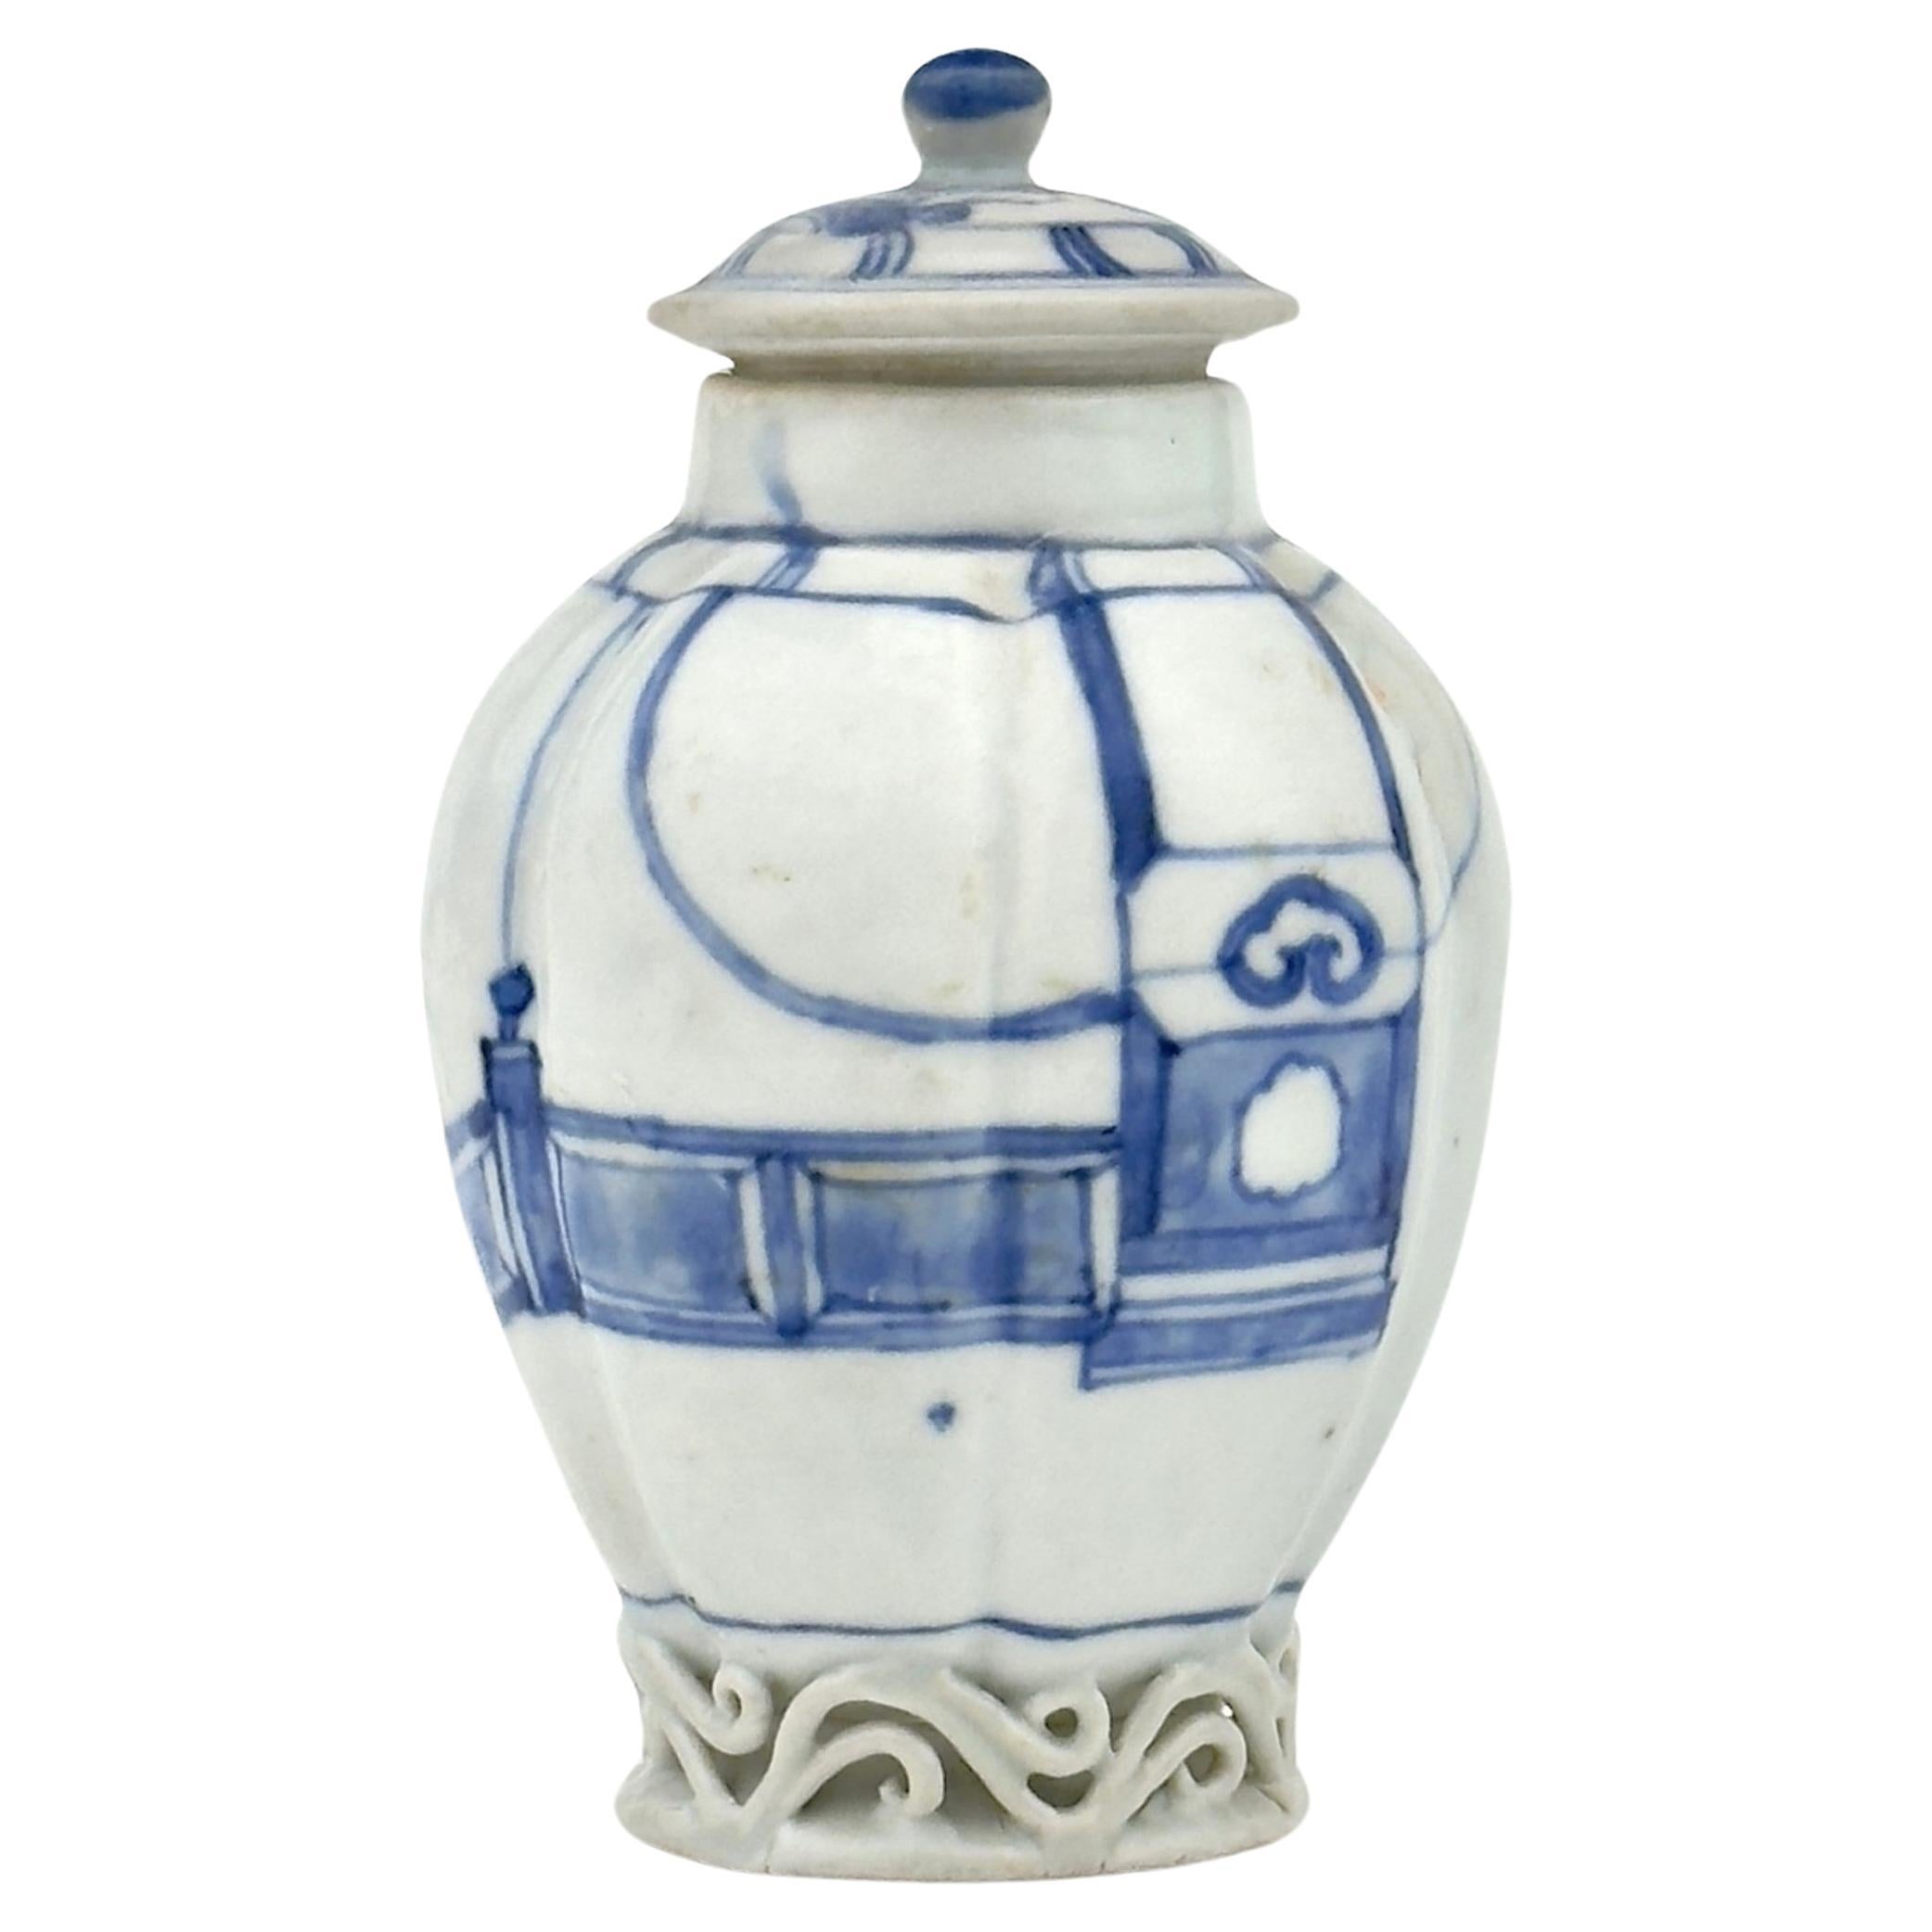 'Imari Pavilion' Pattern Blue and White Jar c. 1725, Qing Dynasty, Yongzheng Era